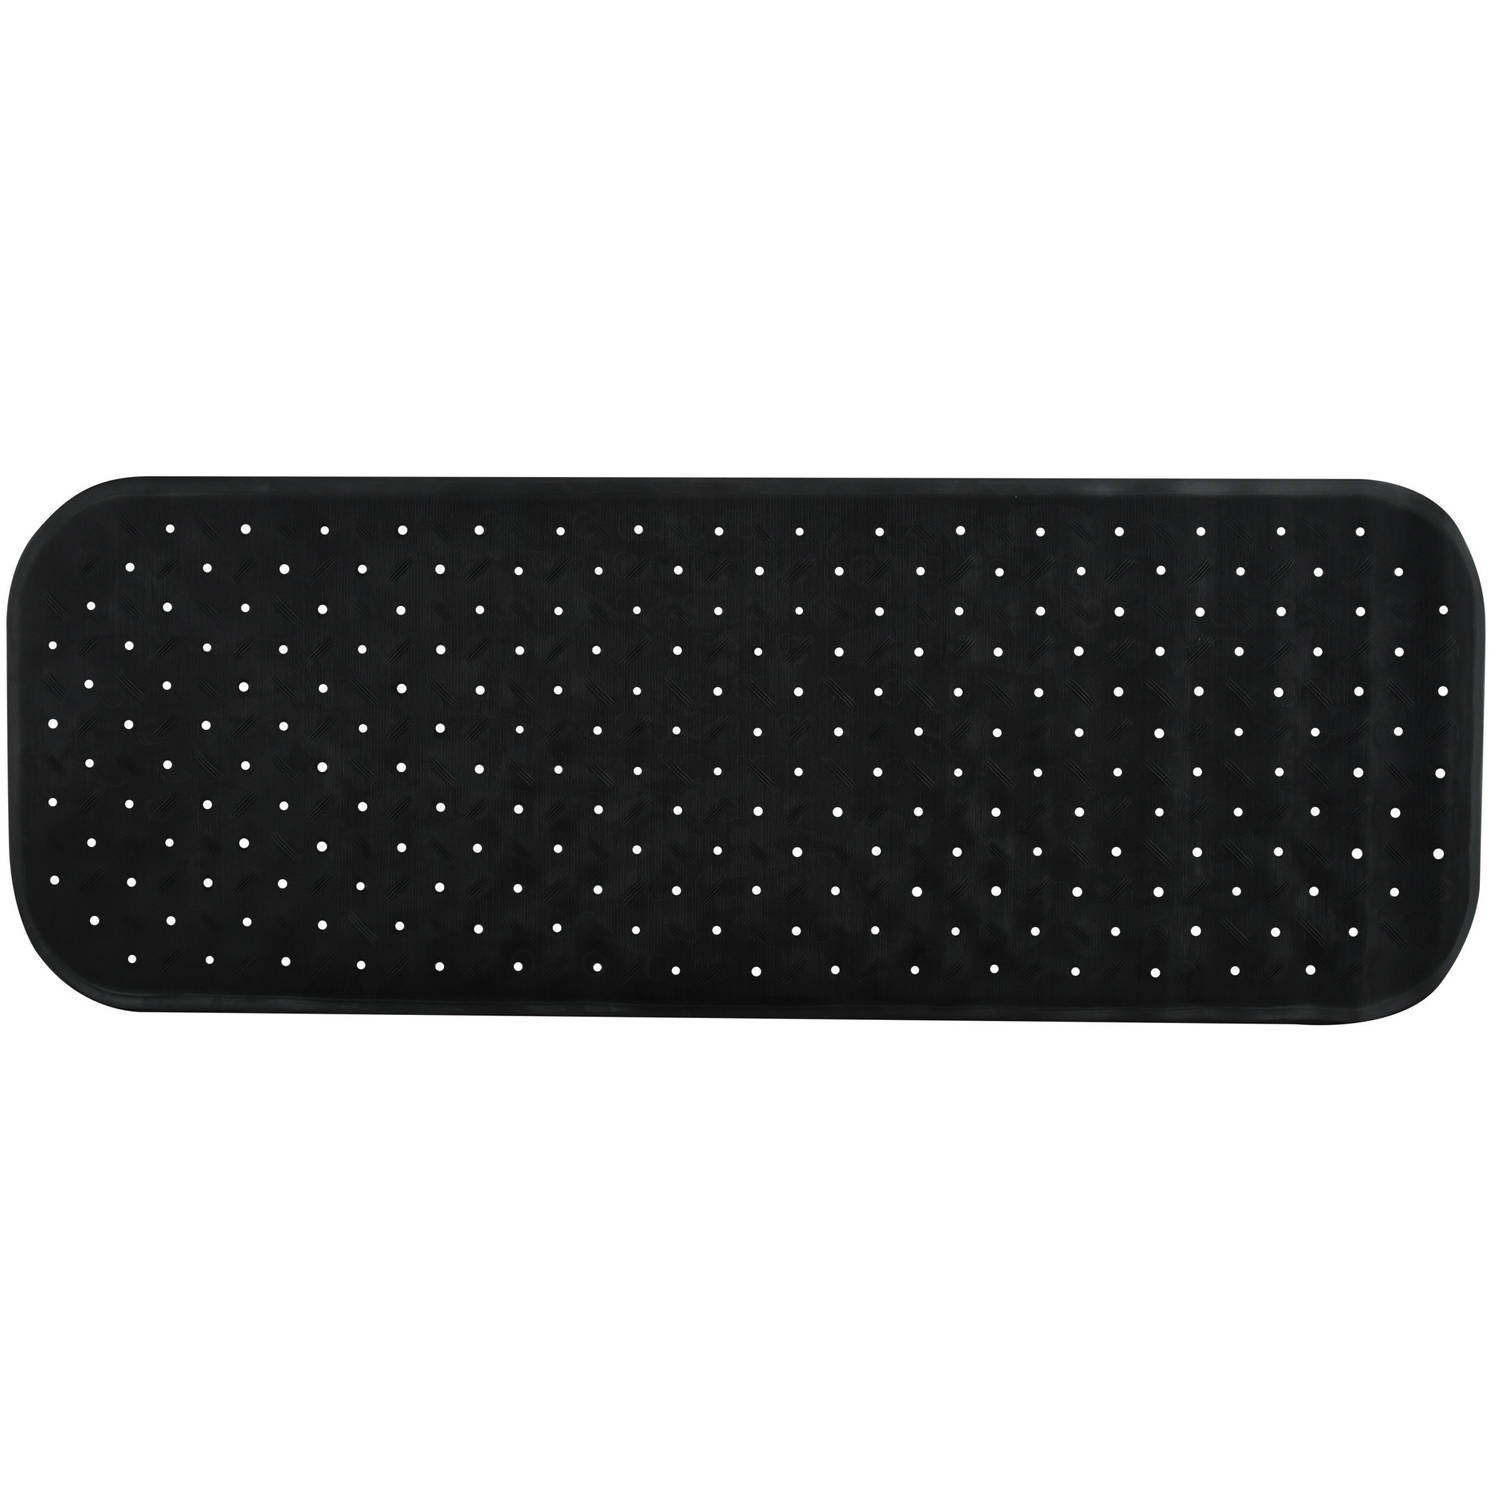 MSV Douche/bad anti-slip mat badkamer - rubber - zwart - 36 x 97 cm - met zuignappen - extra lang formaat